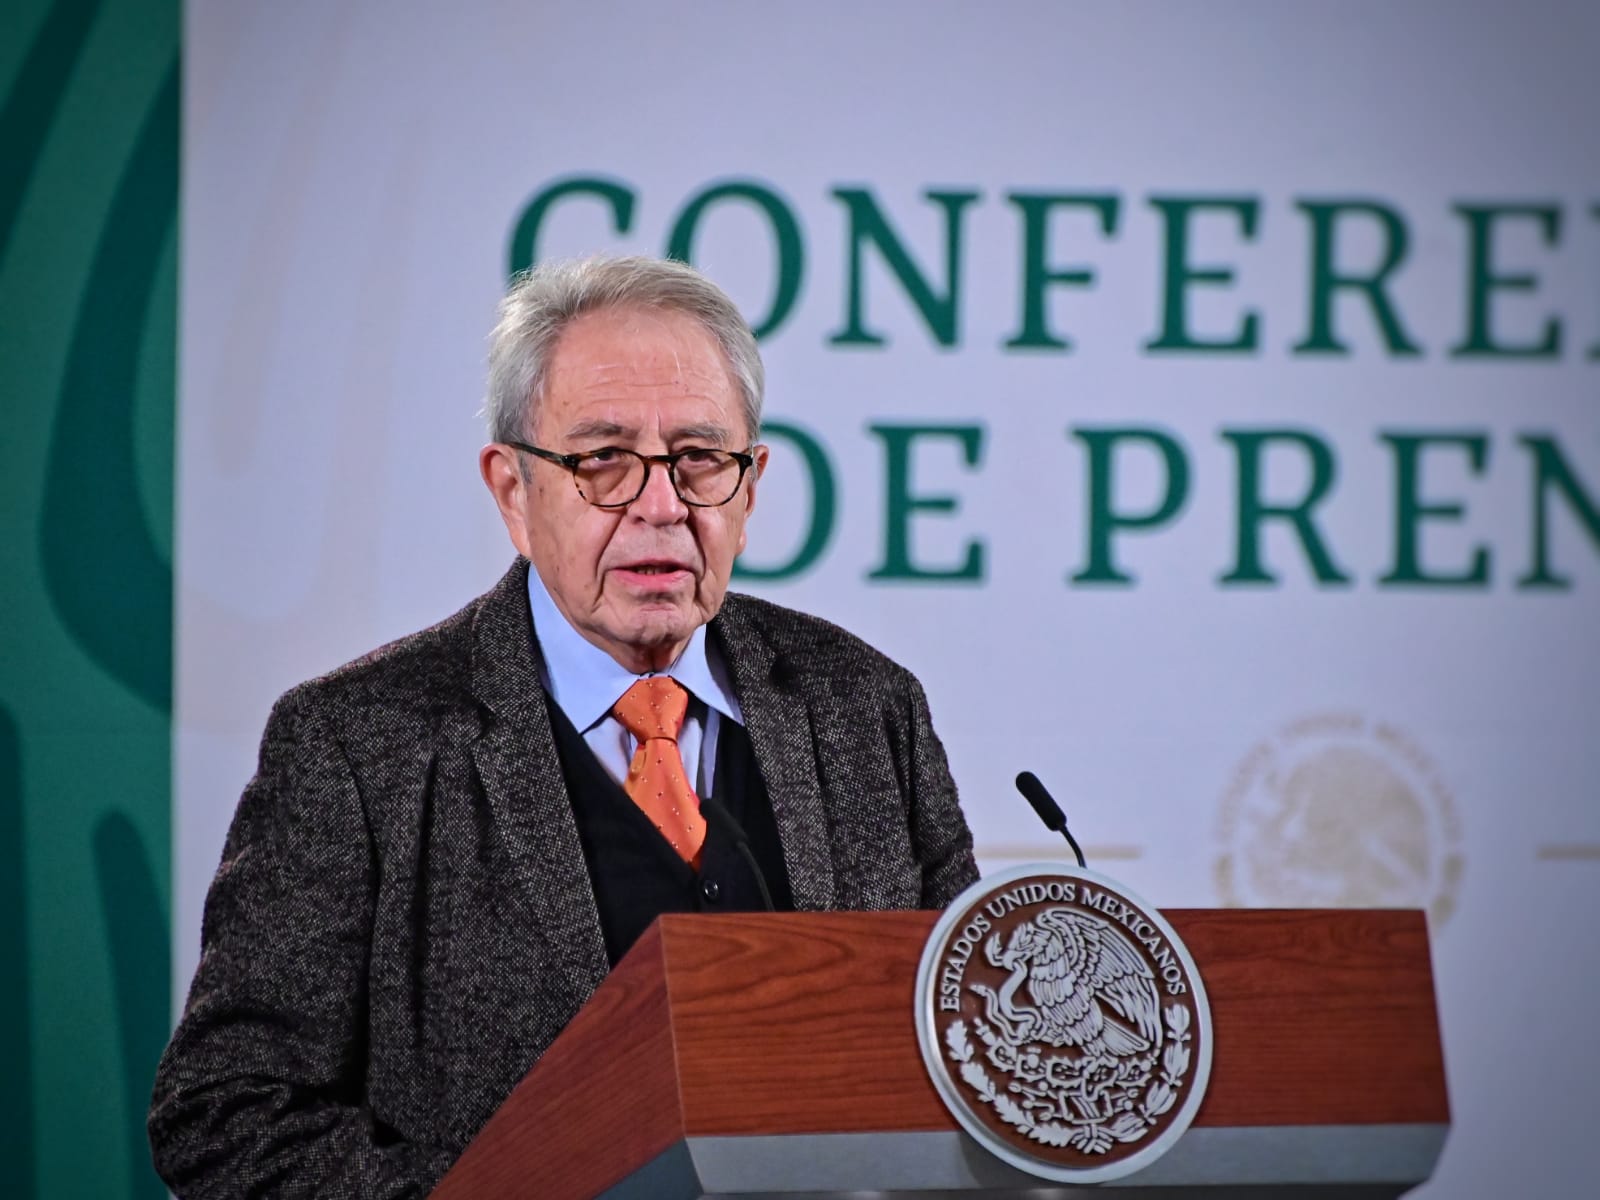 Dr. Jorge Alcocer Varela, Secretario de Salud.